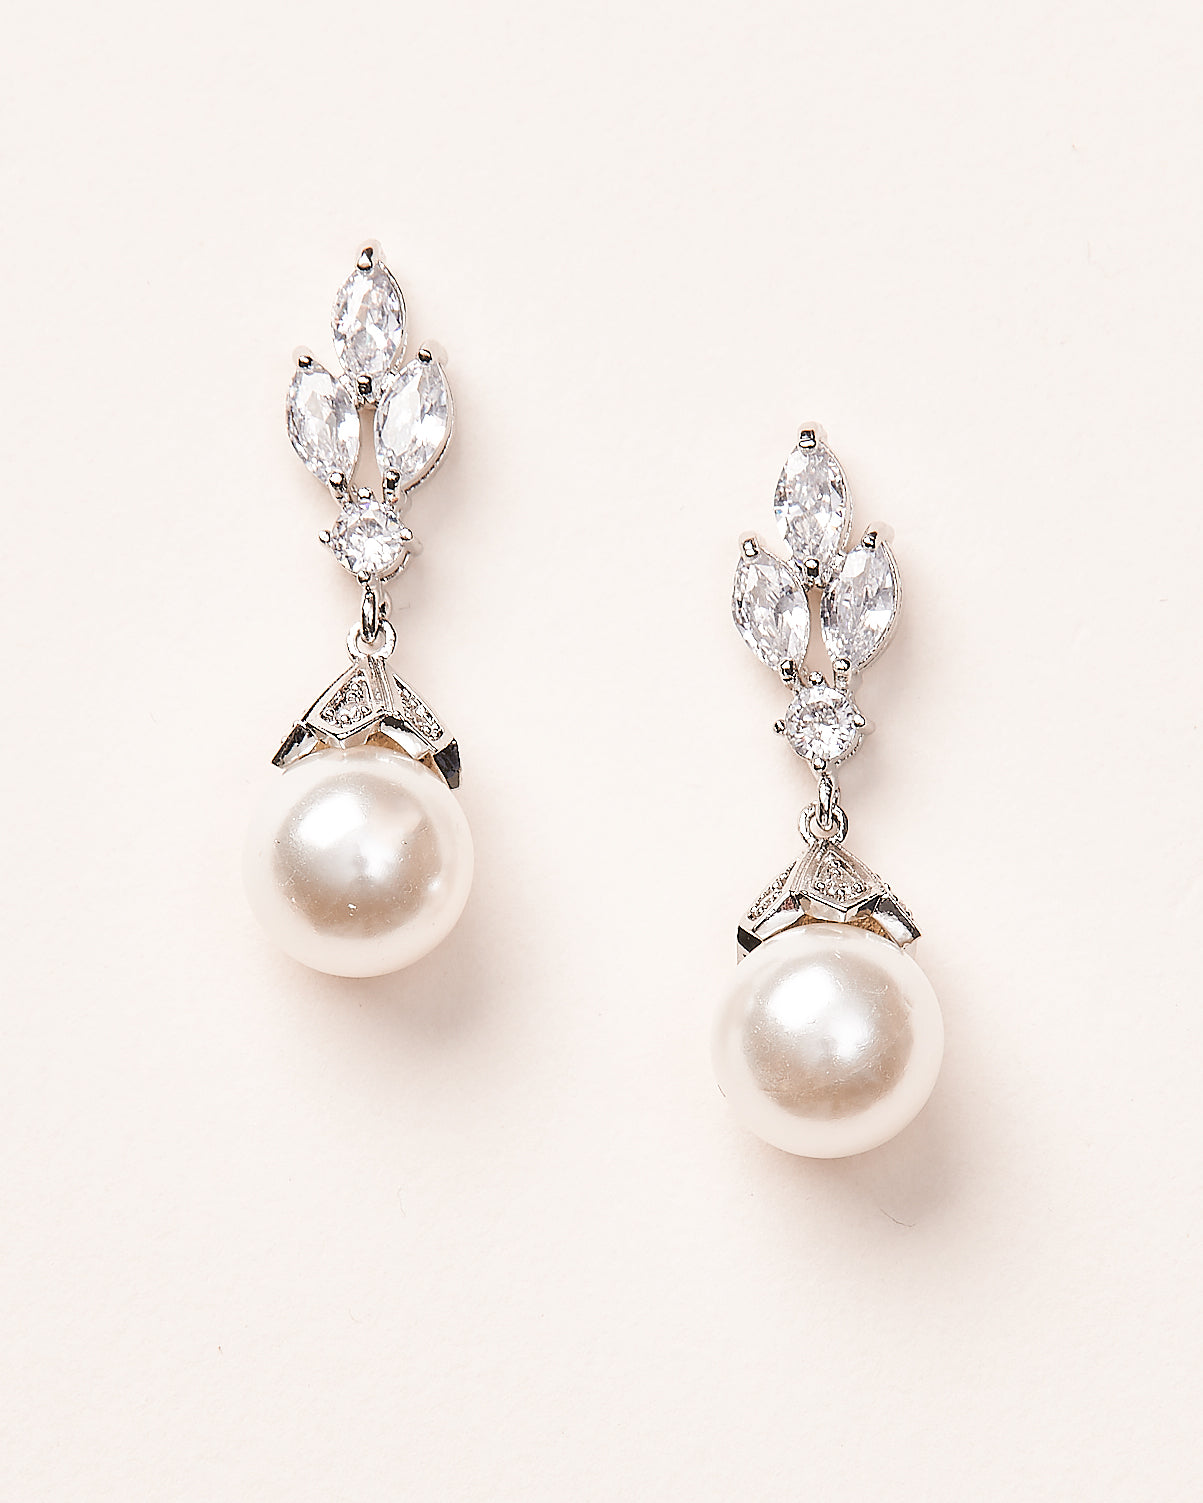 Wedding Earrings | Rosegold Wedding Earrings | Millieicaro - Style E08